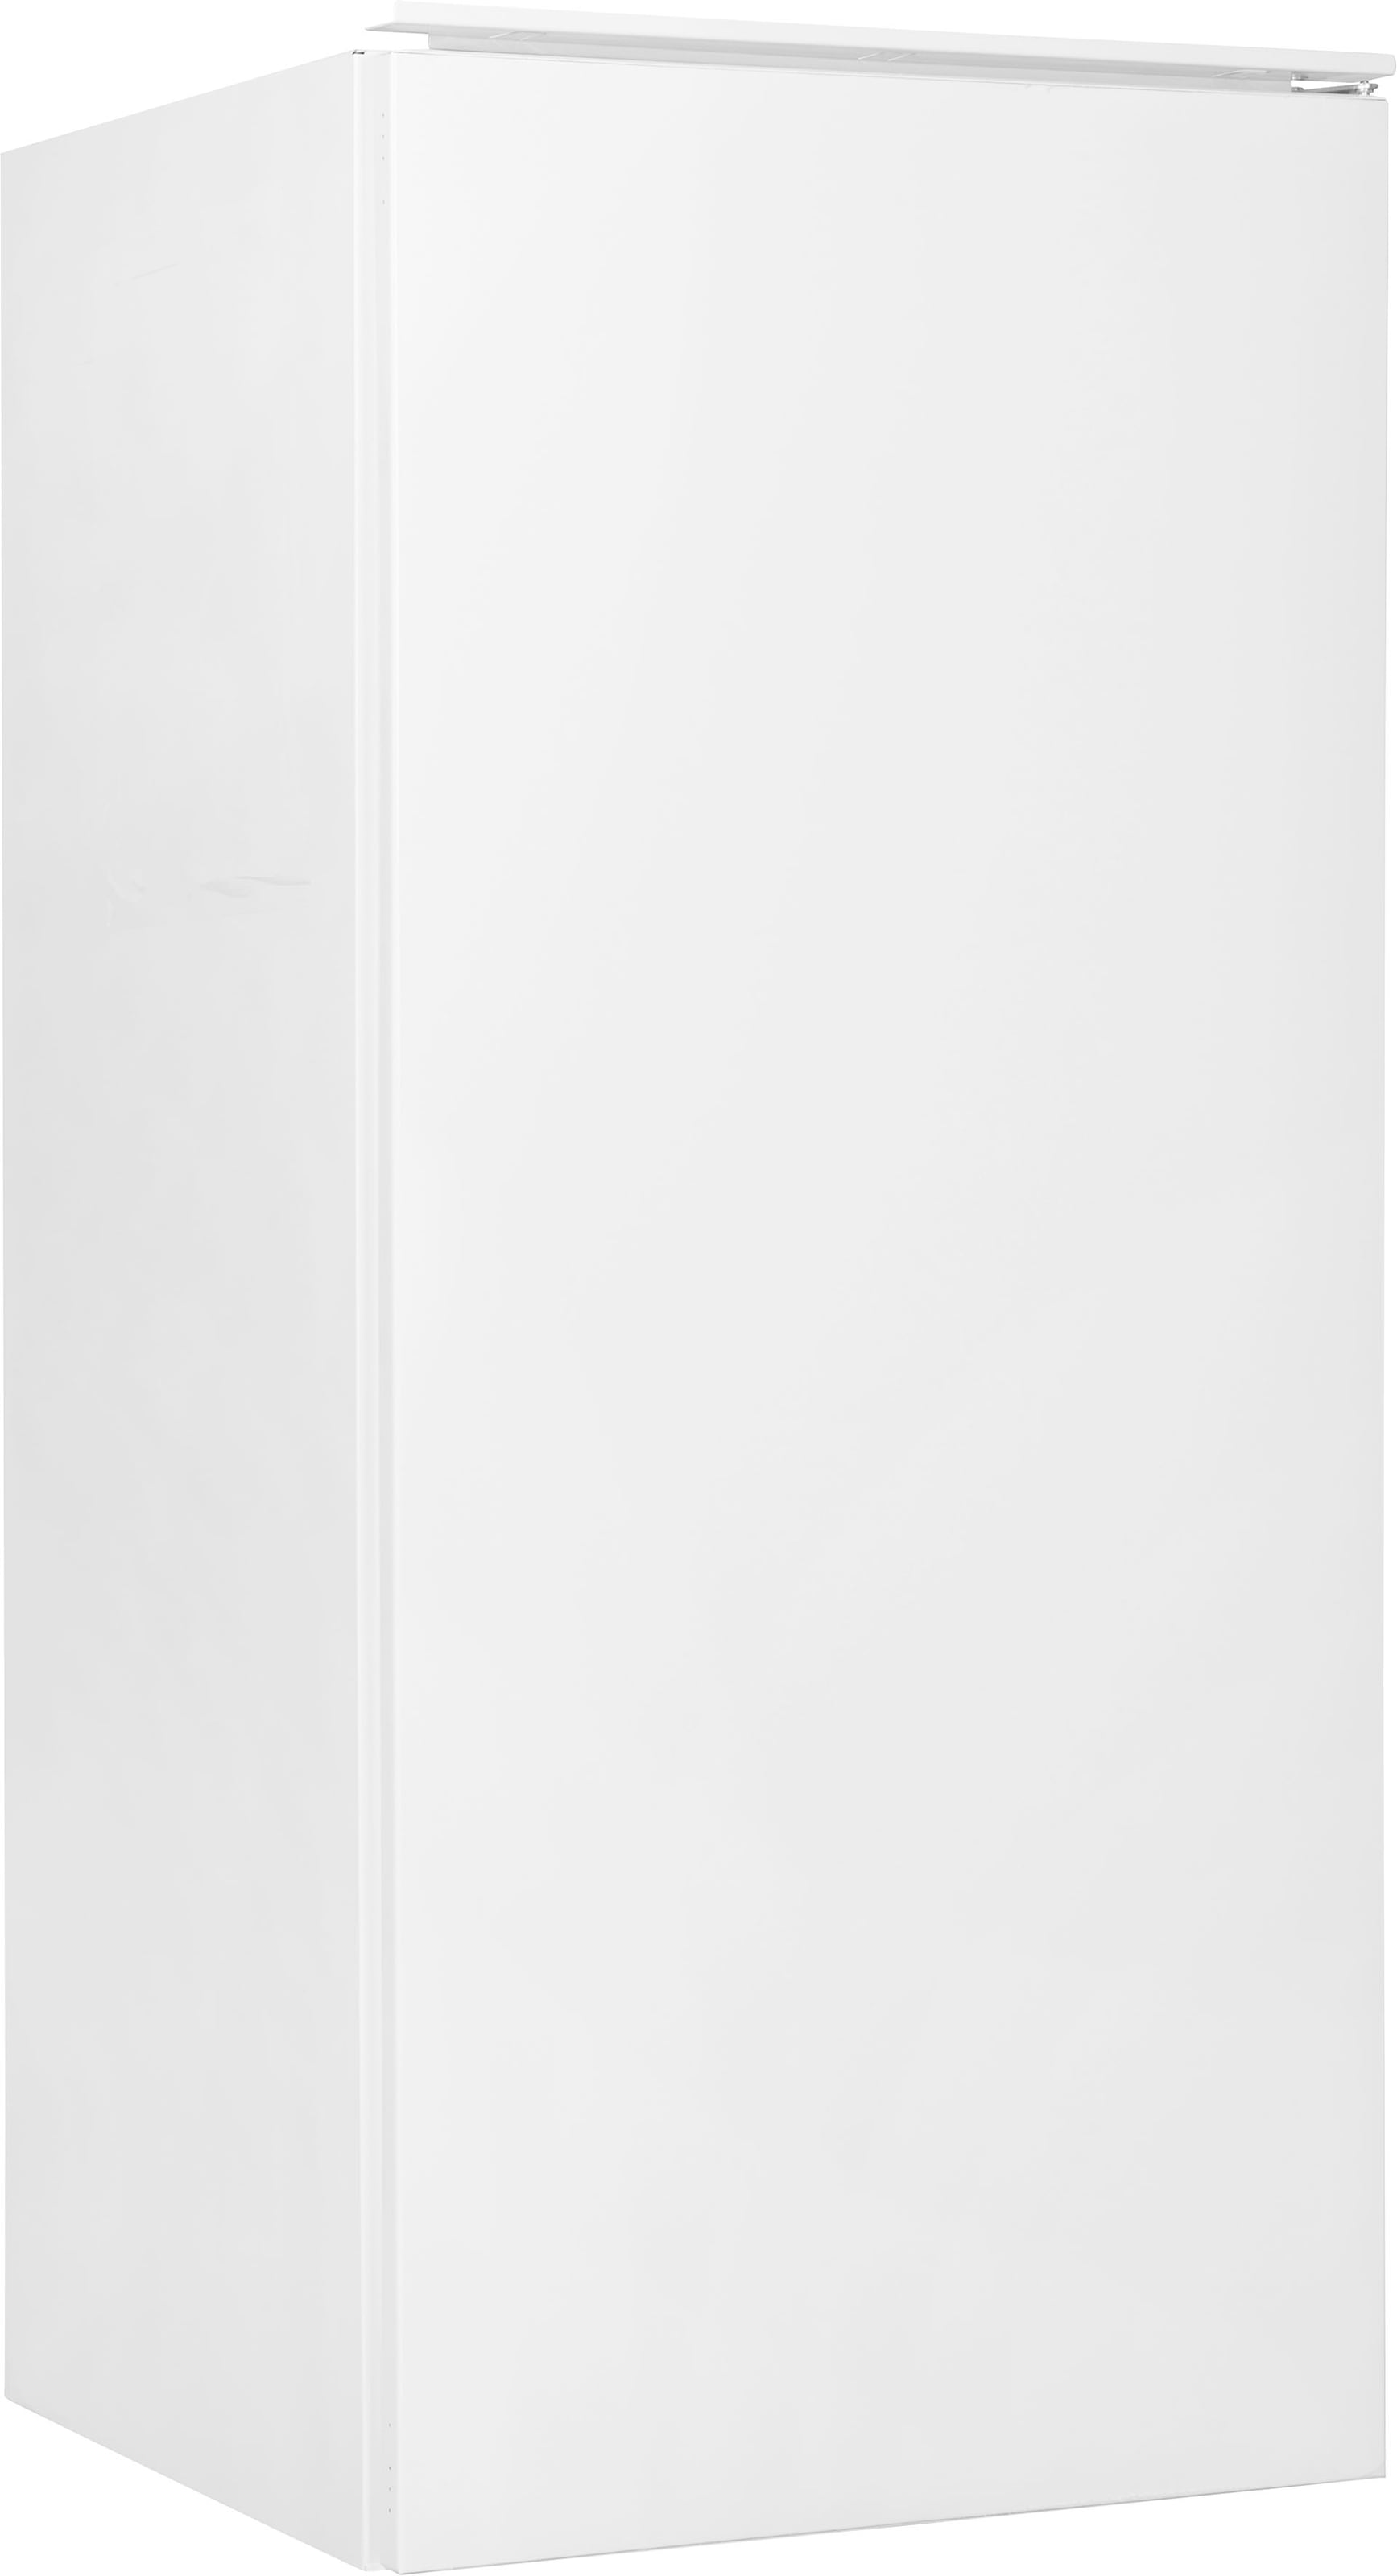 Hanseatic Einbaukühlschrank »HEKS12254GE«, HEKS12254GE, 123 cm hoch, 54 cm breit